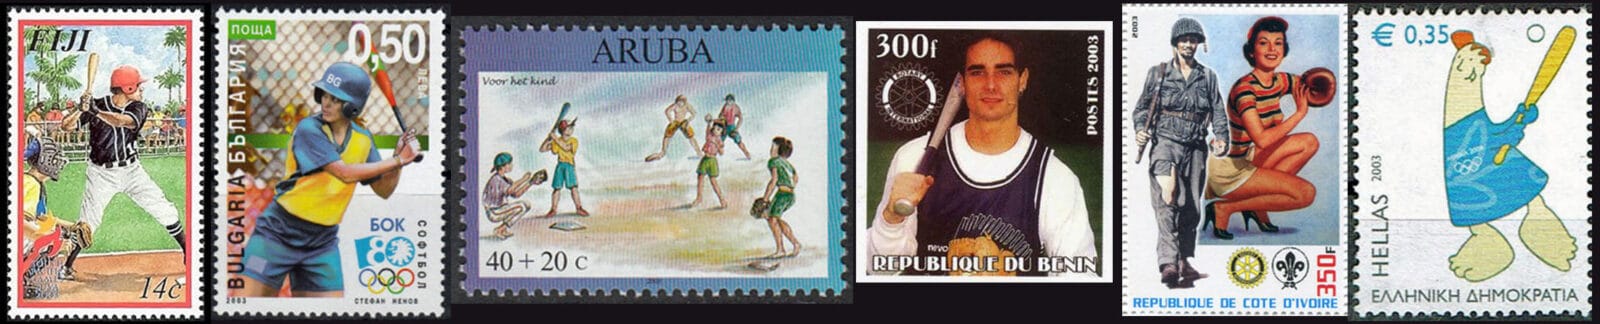 2003 Baseball Postage Stamps Header